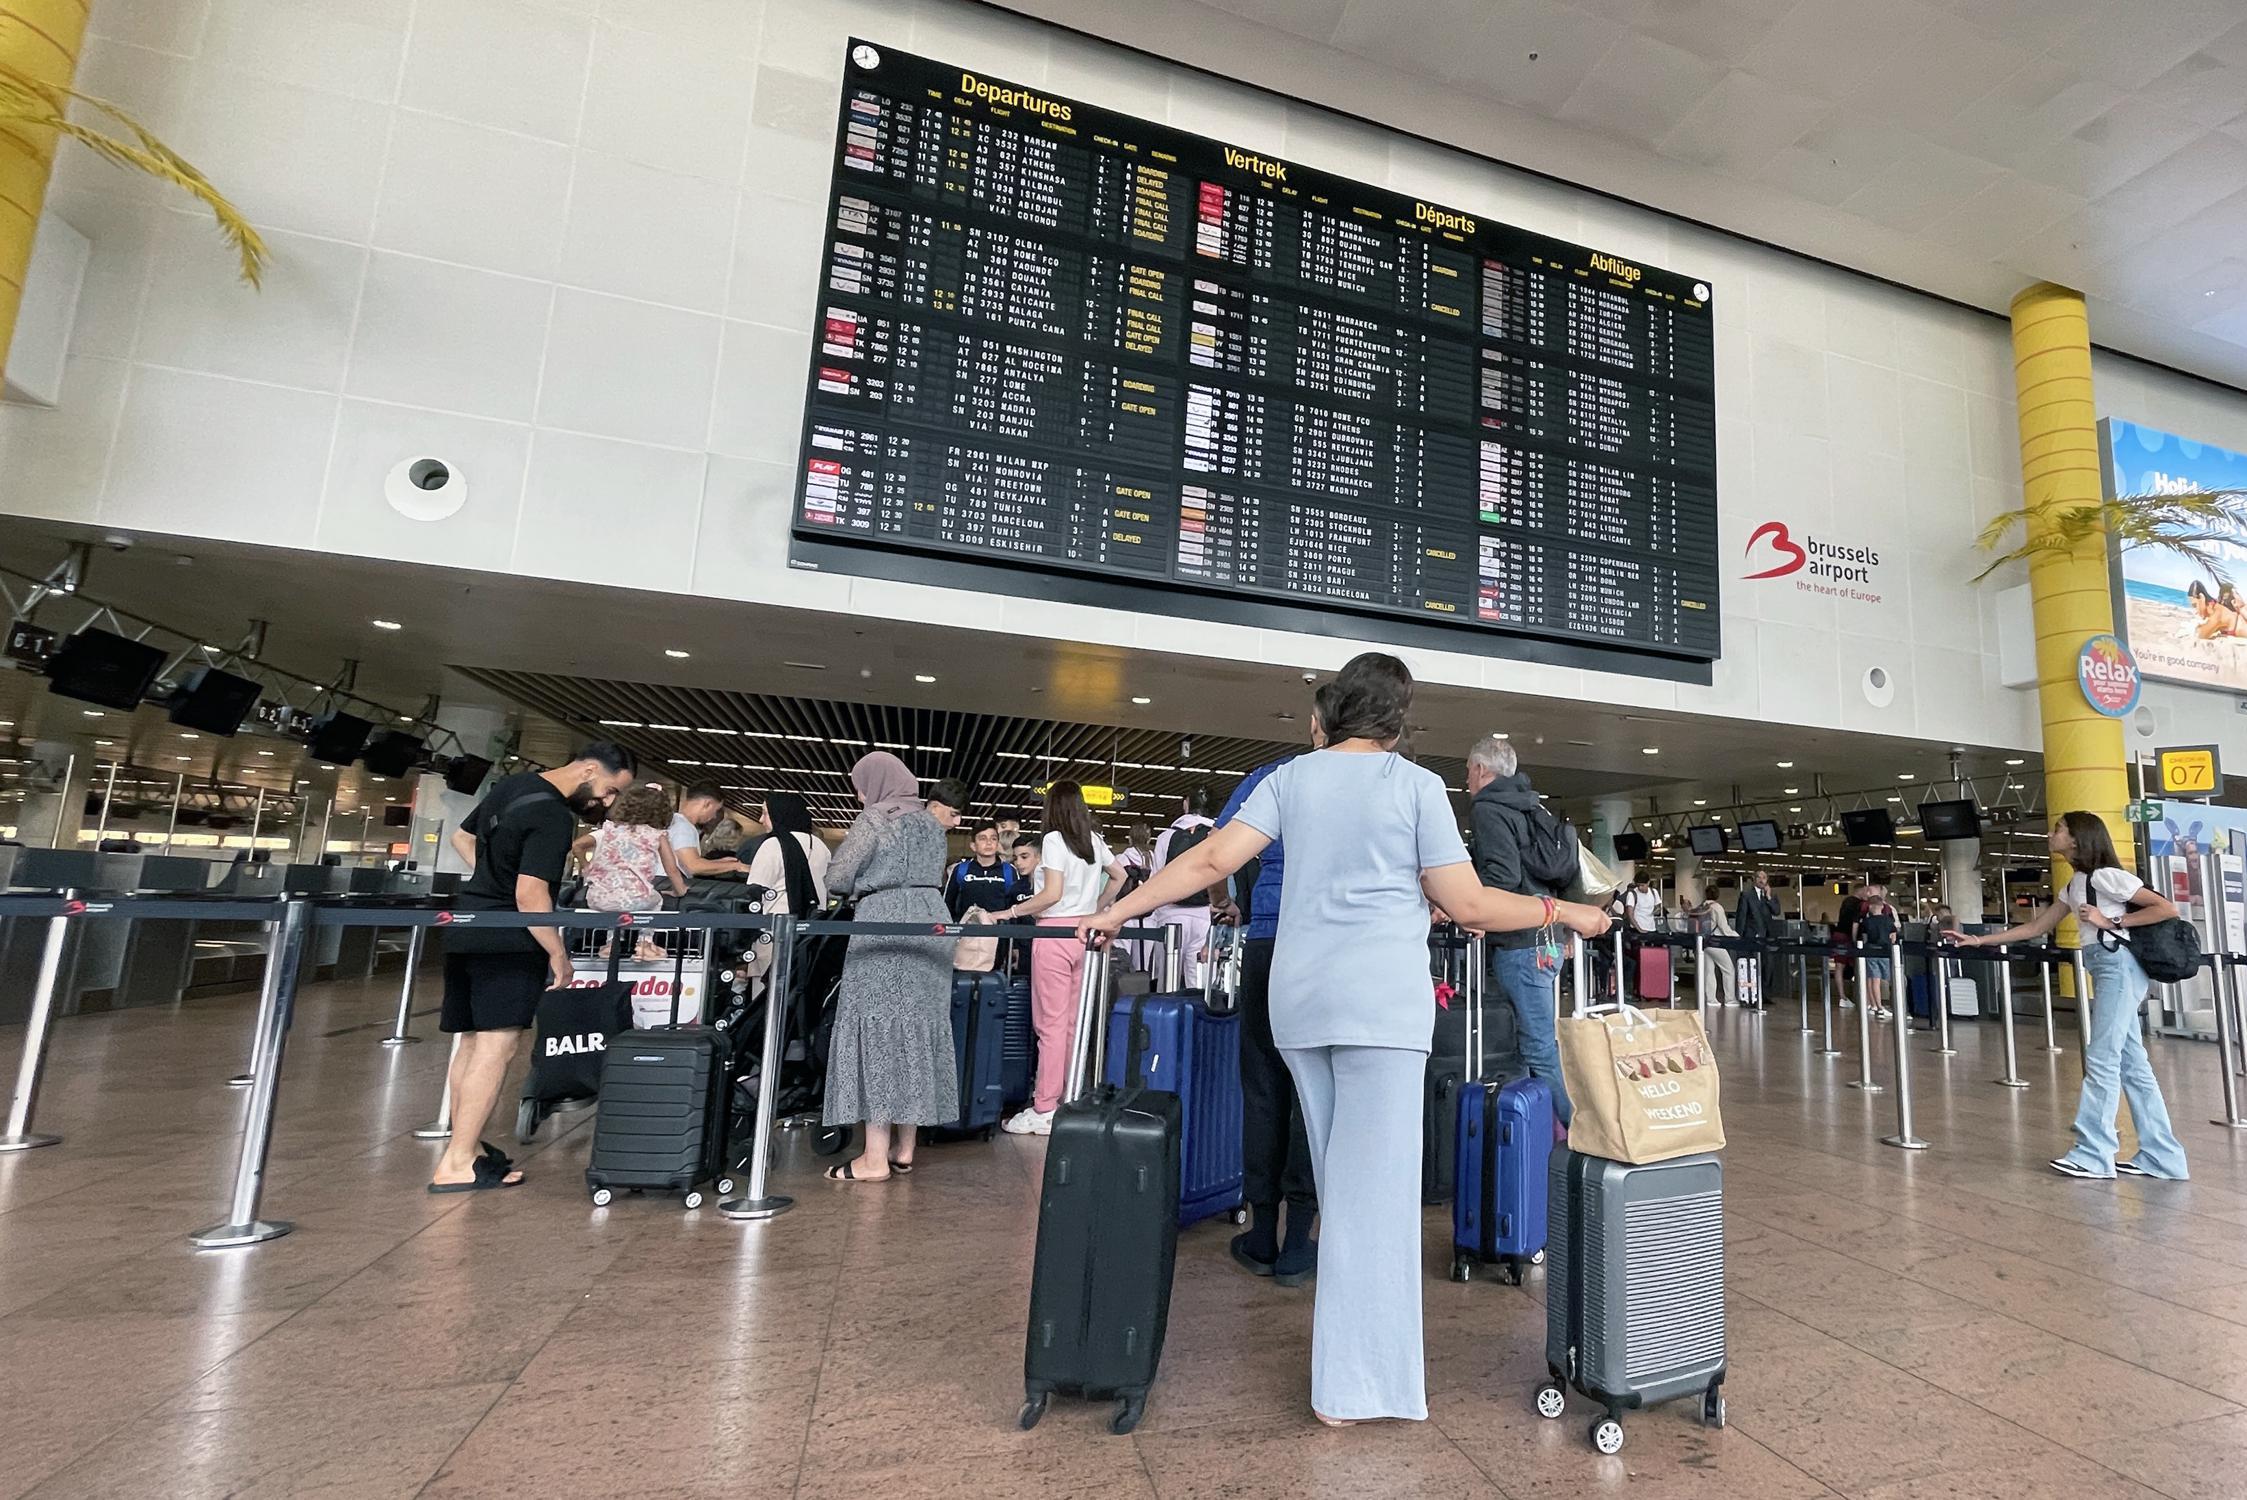 Birikmiş iş yükünün taranması 300 Brüksel Havalimanı çalışanının çalışmasını engelliyor